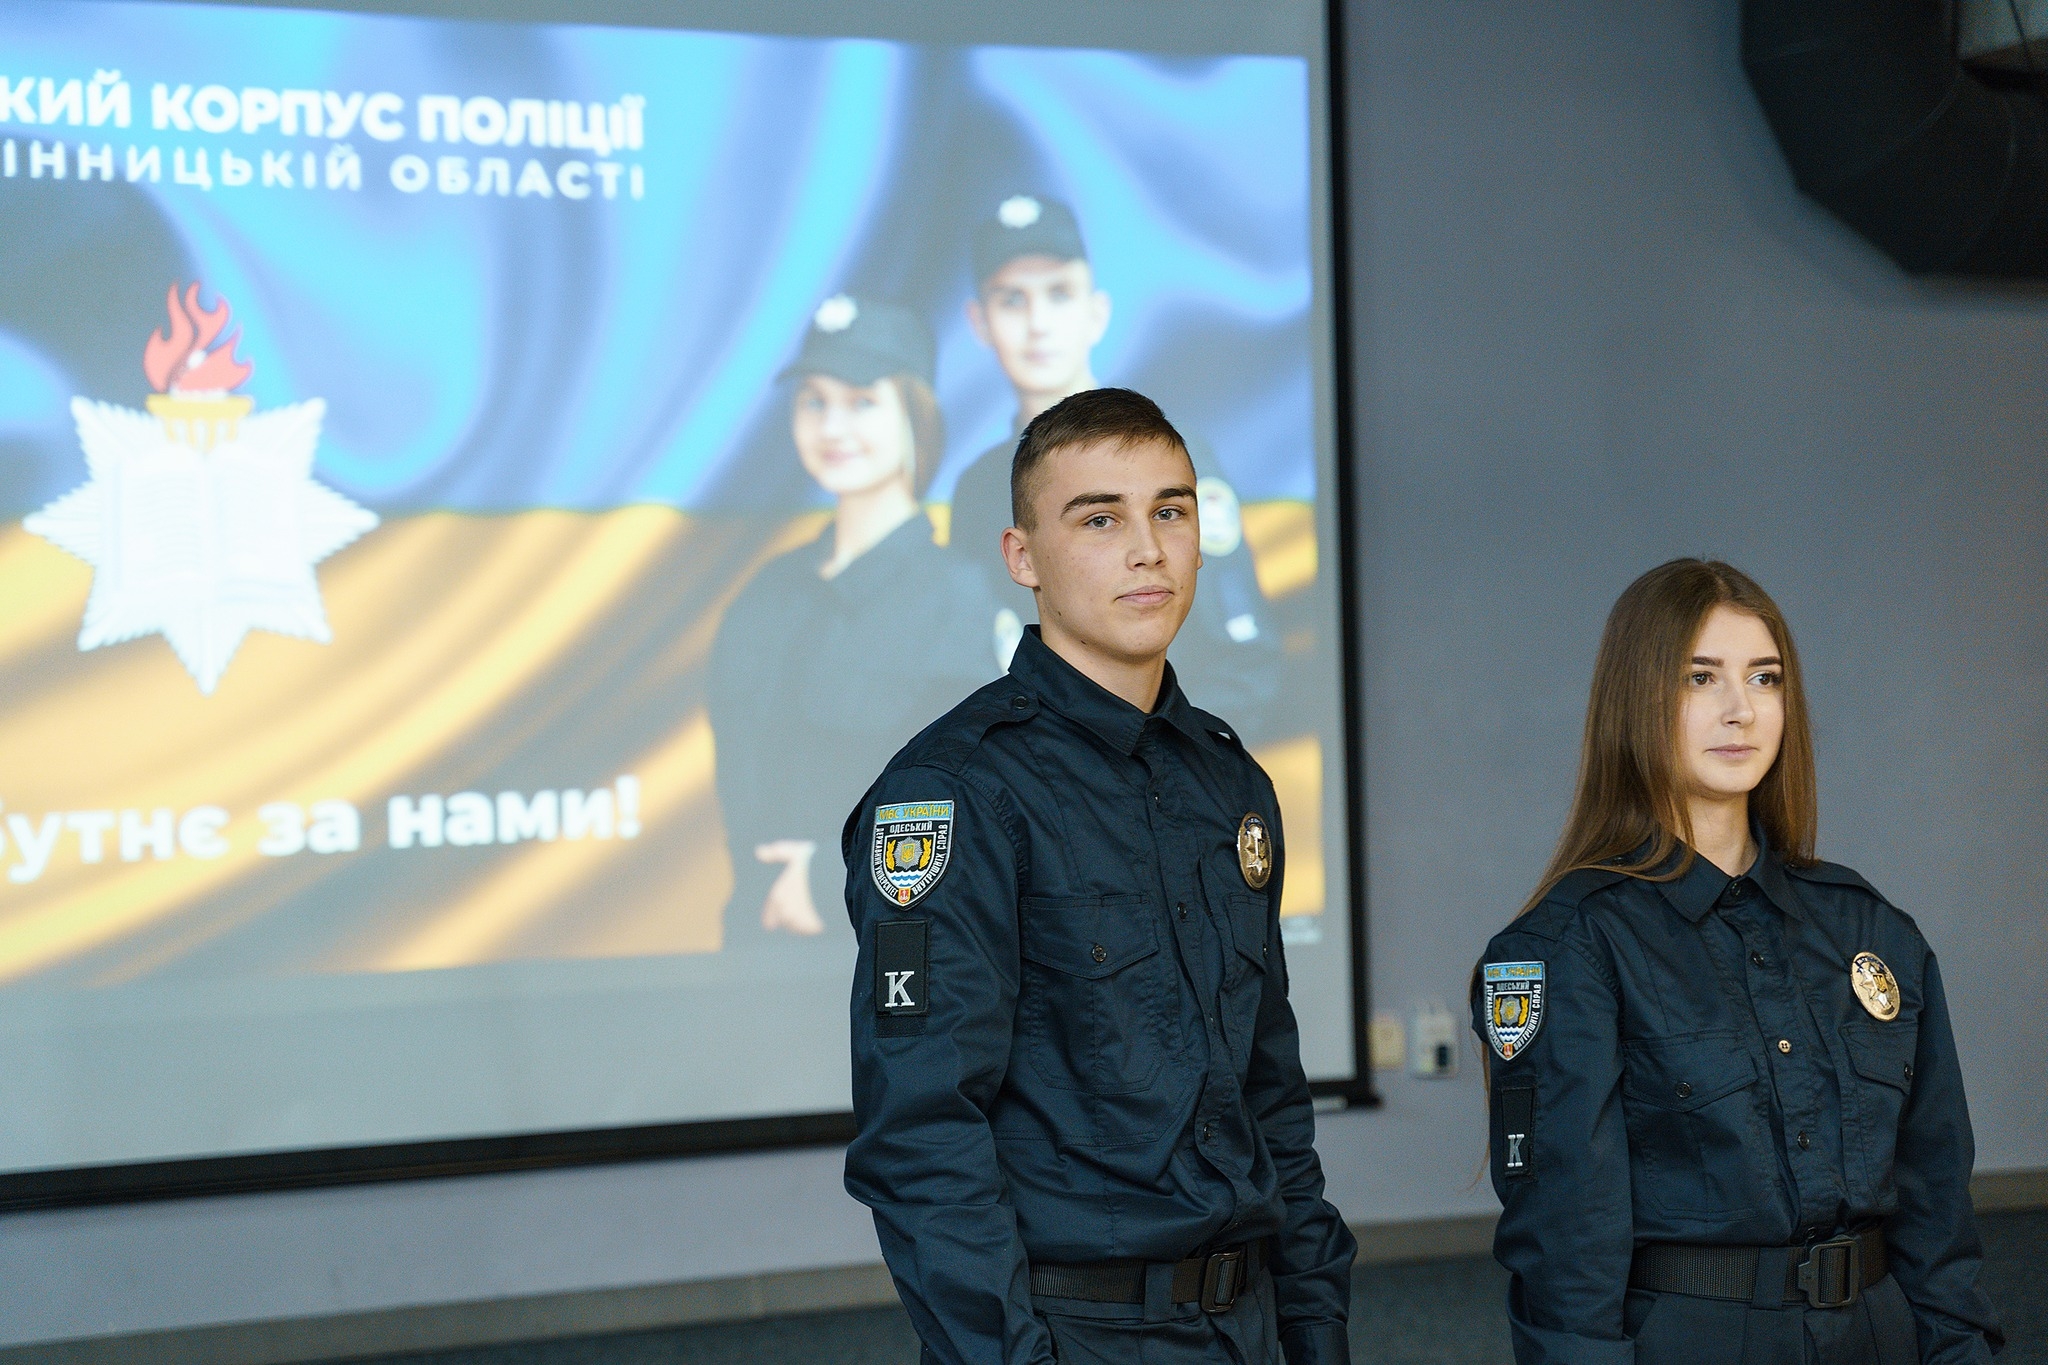 Сергій Моргунов: вінницьку молодь безкоштовно навчатимуть на поліцейських